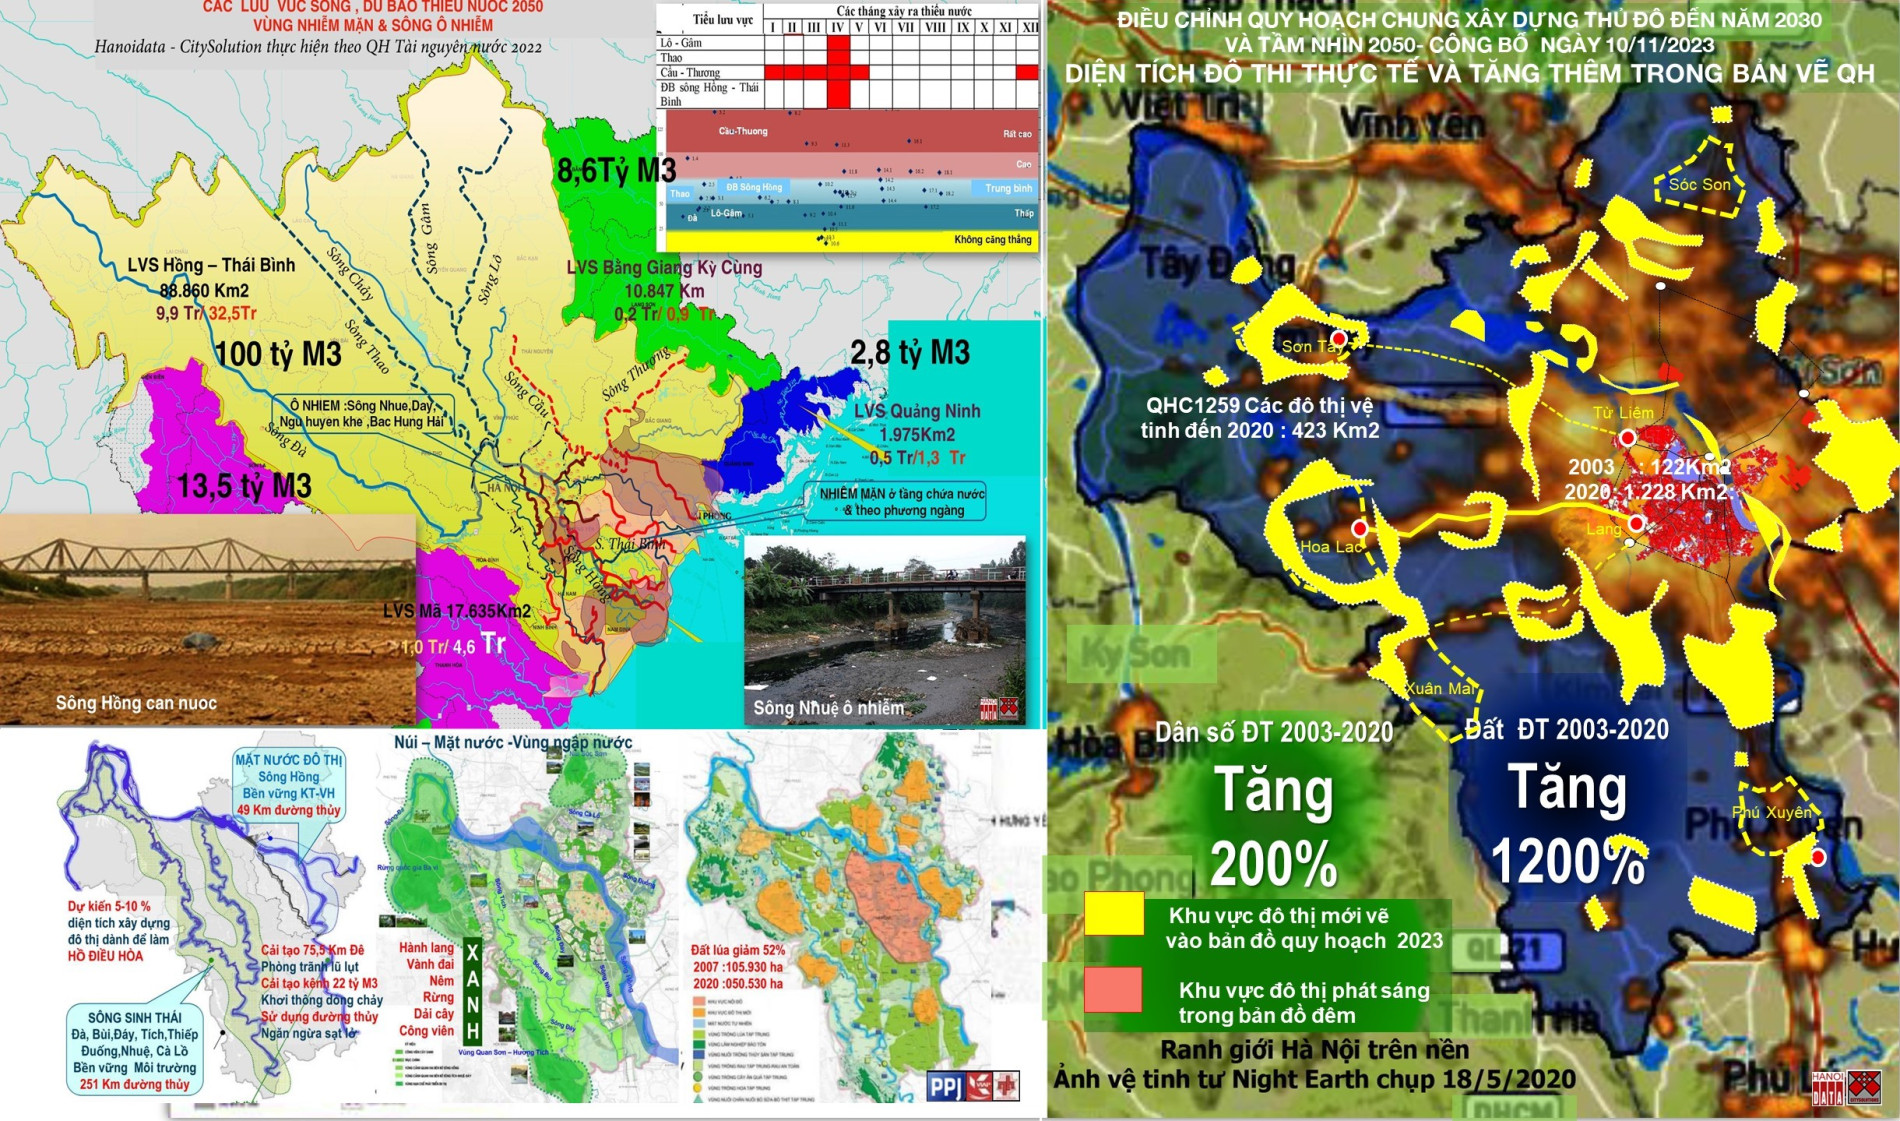 Quy hoạch Tổng thể Seoul 2040: Những ví dụ tốt cho Quy hoạch Thủ đô Hà Nội – Bài 2: Quy hoạch để dòng sông trở nên vĩ đại và thân thiện với con người - Tạp chí Kiến trúc Việt Nam